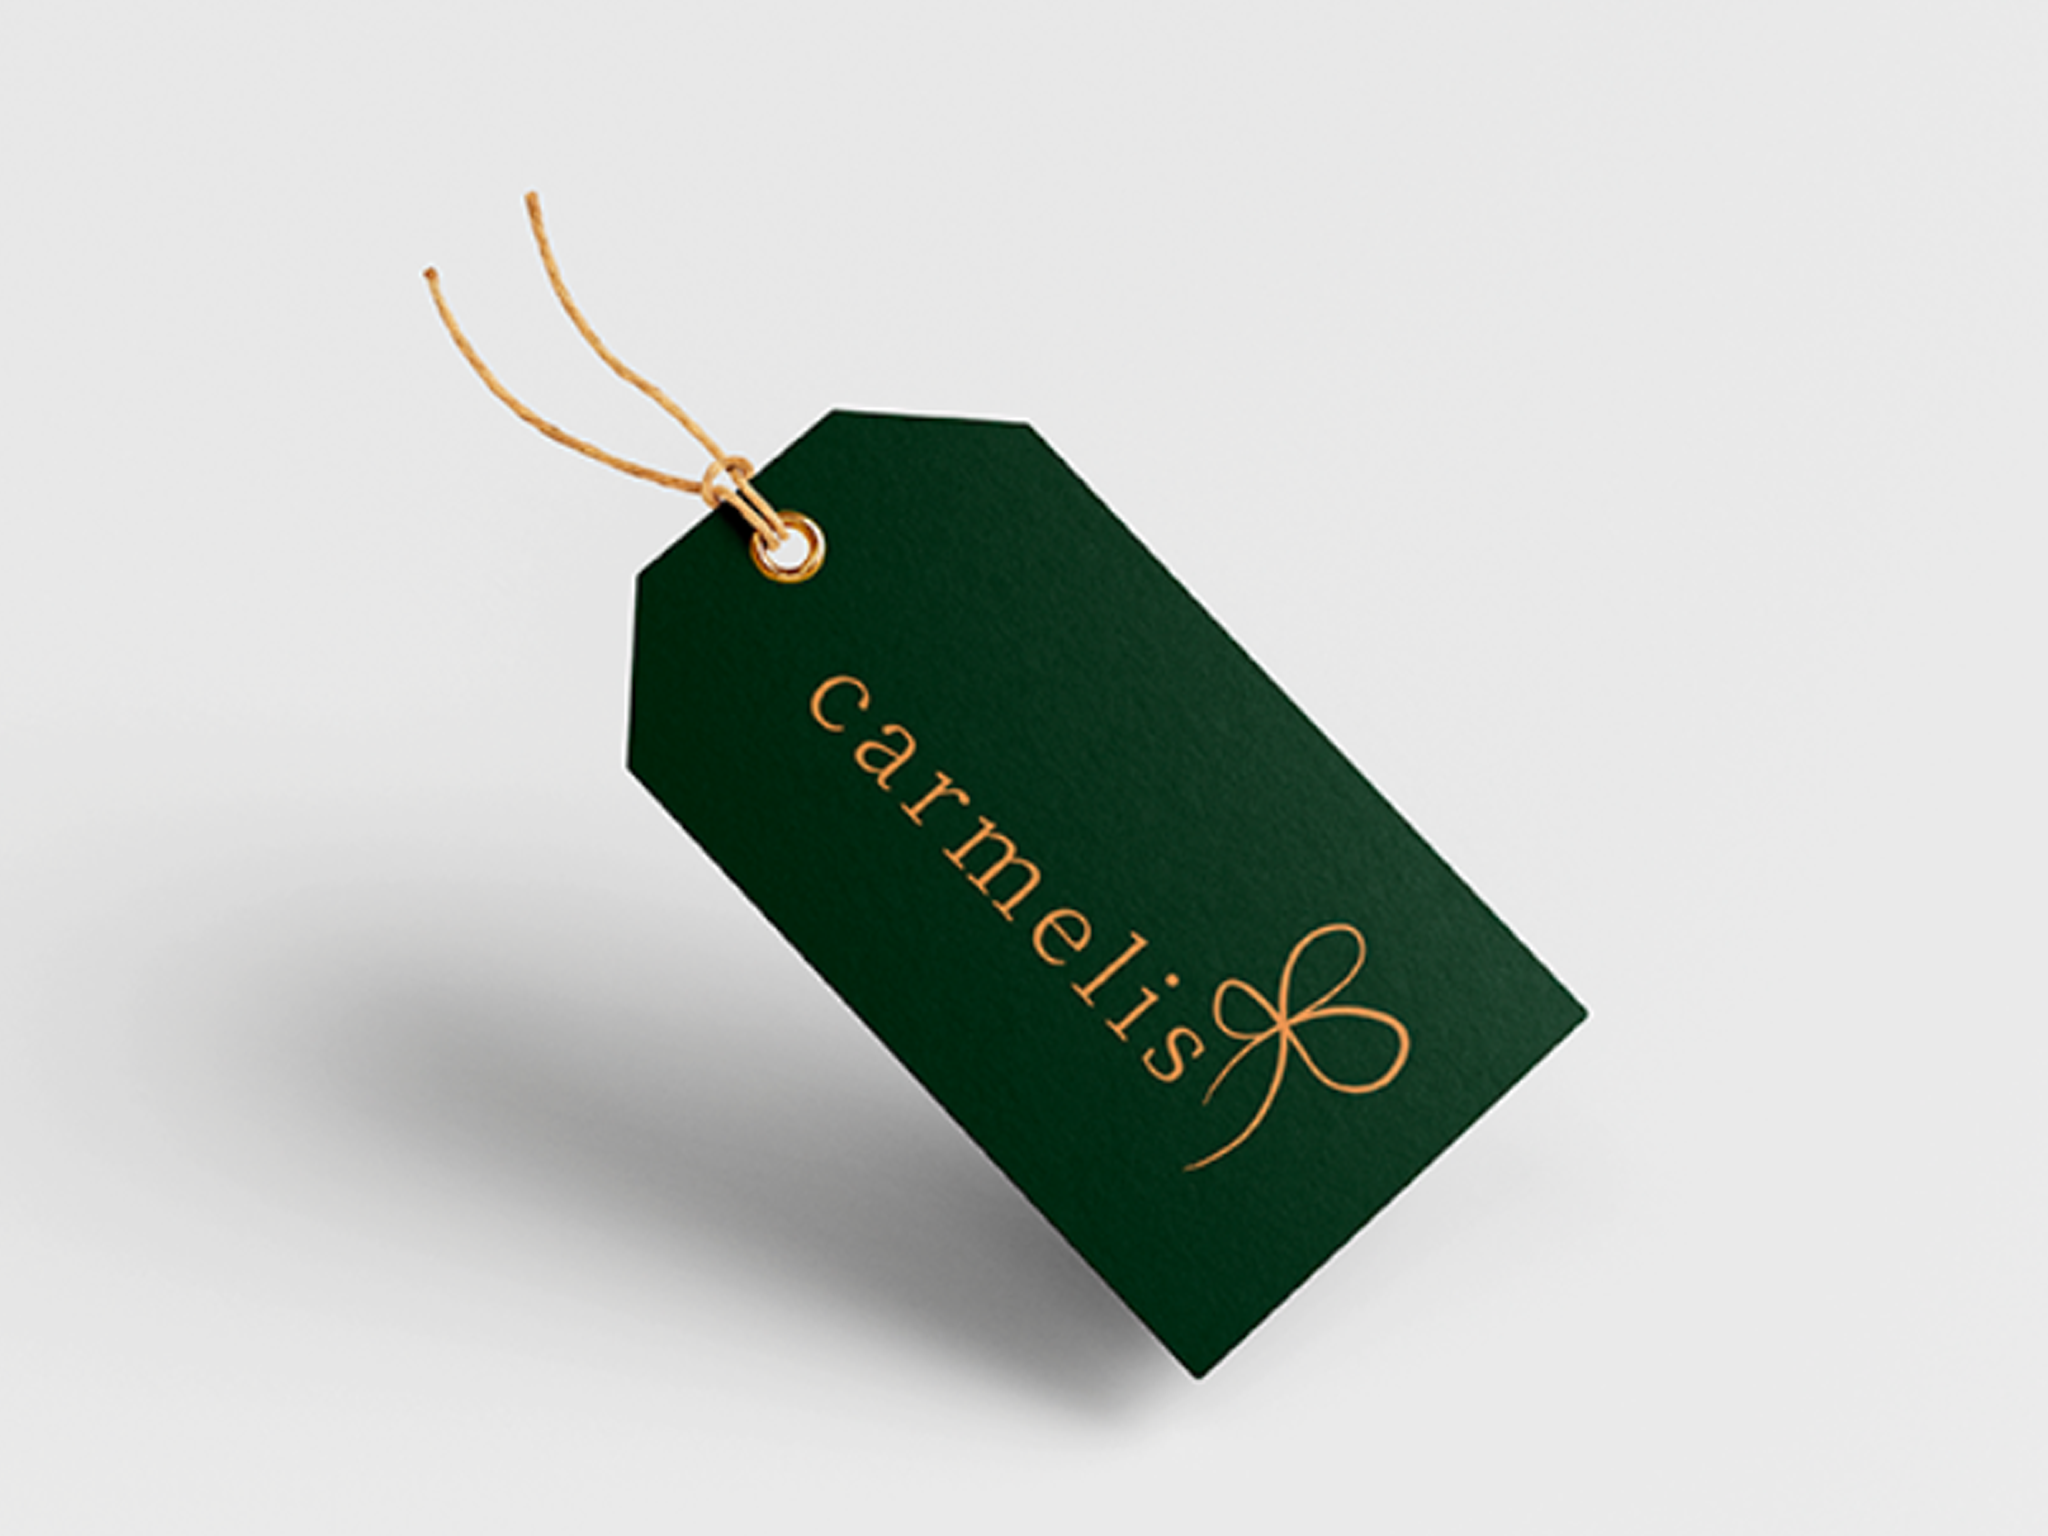 Etiquet verde escuro com o nome da carmelis e a logo em dourado